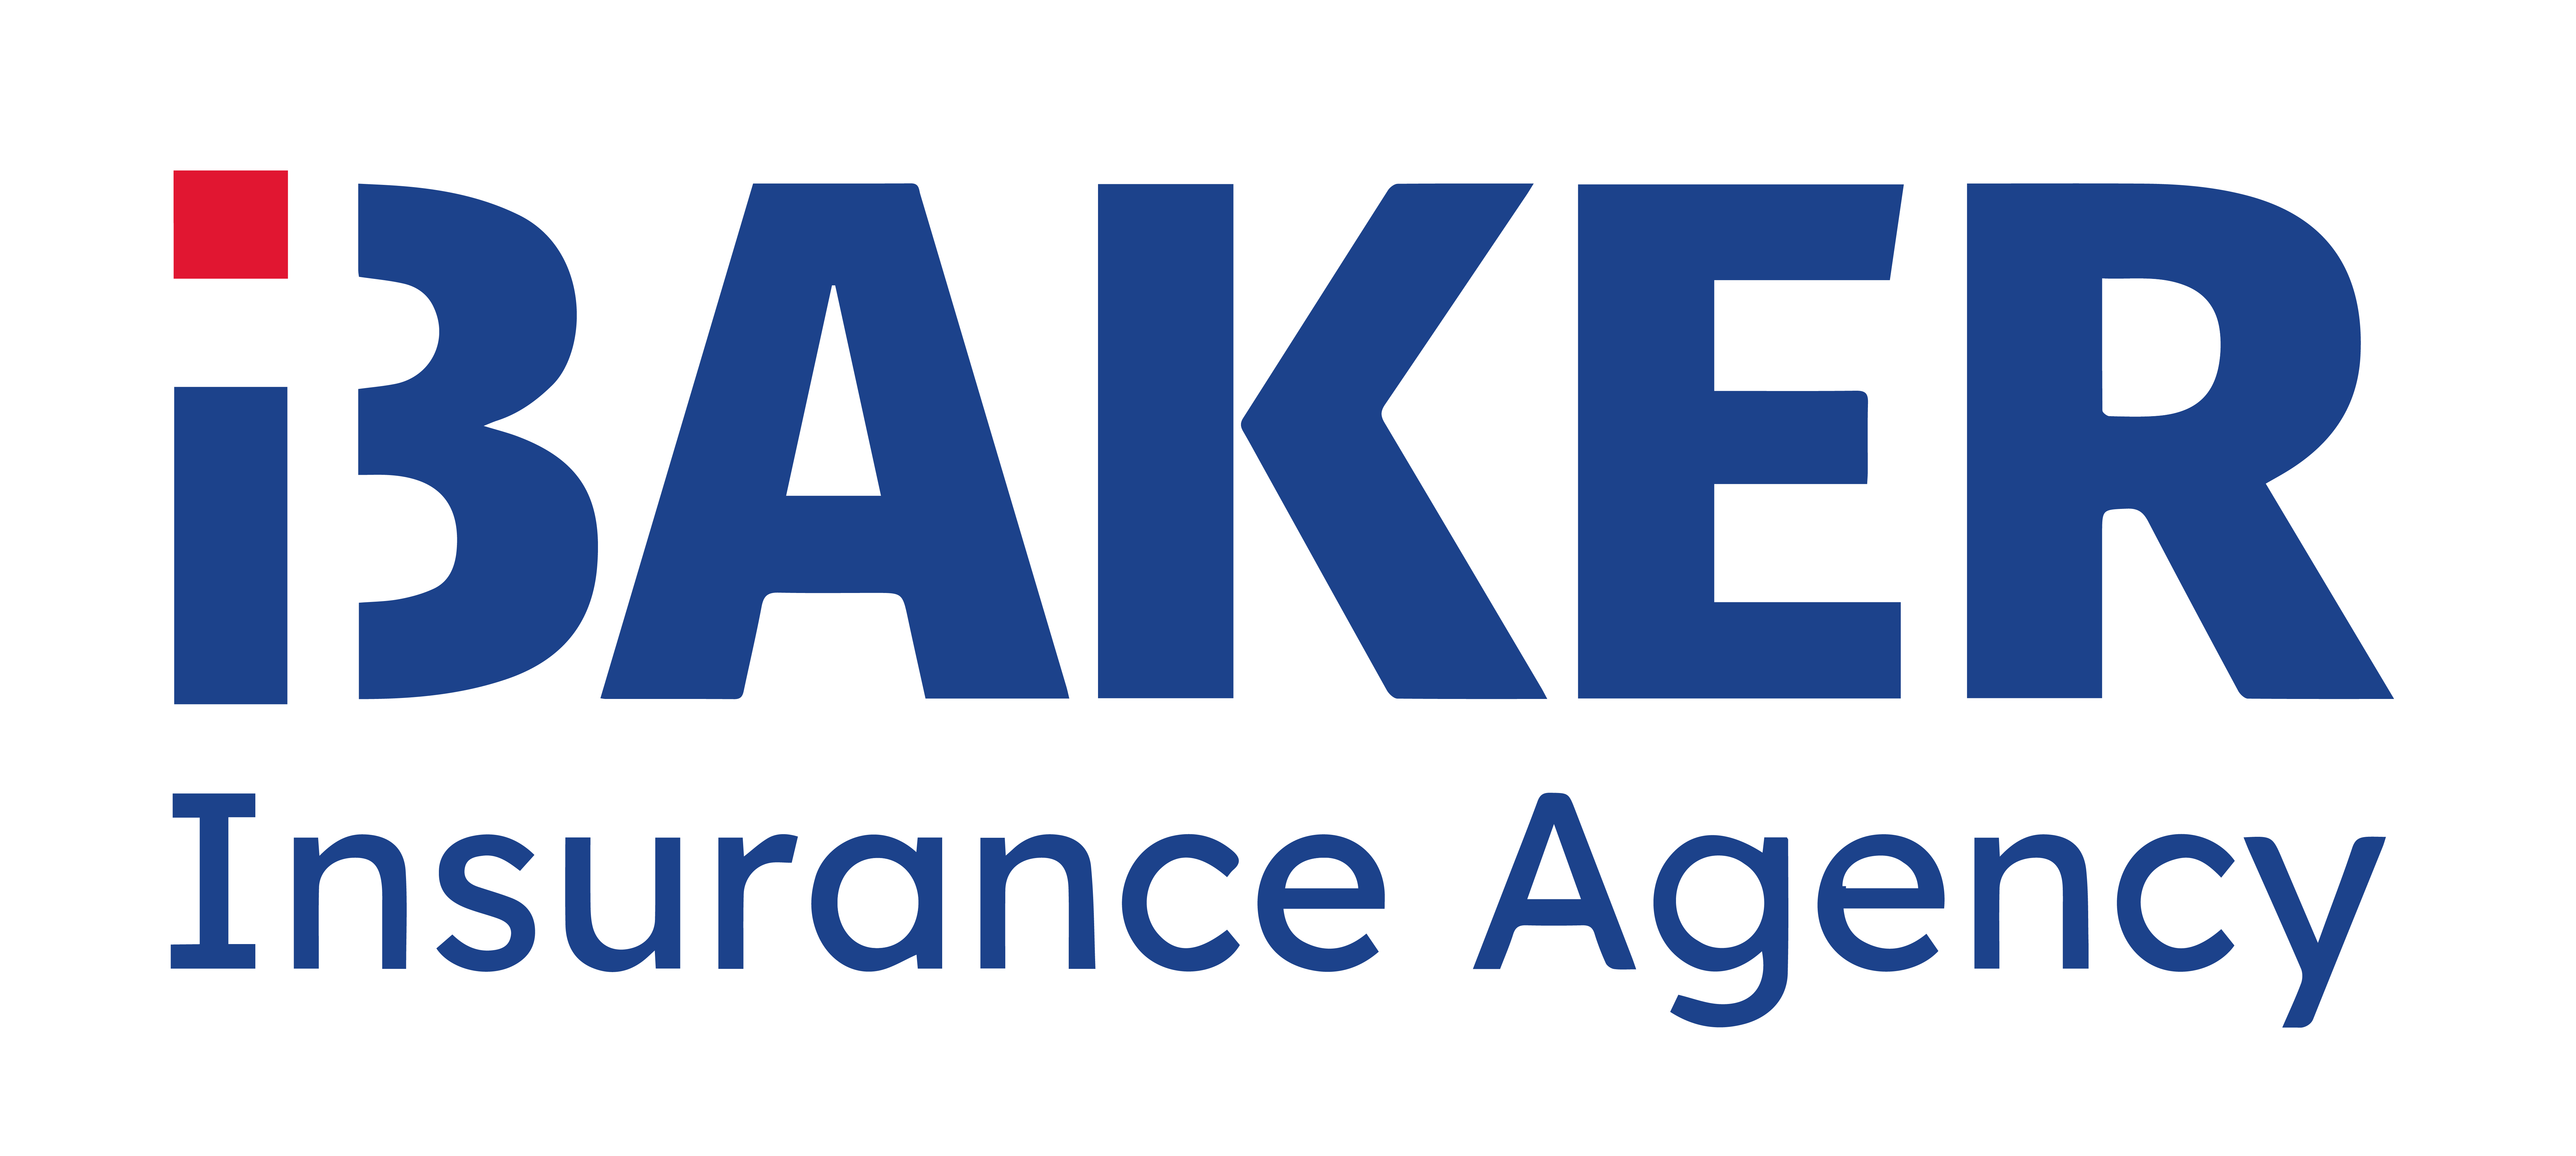 Baker Insurance Agency